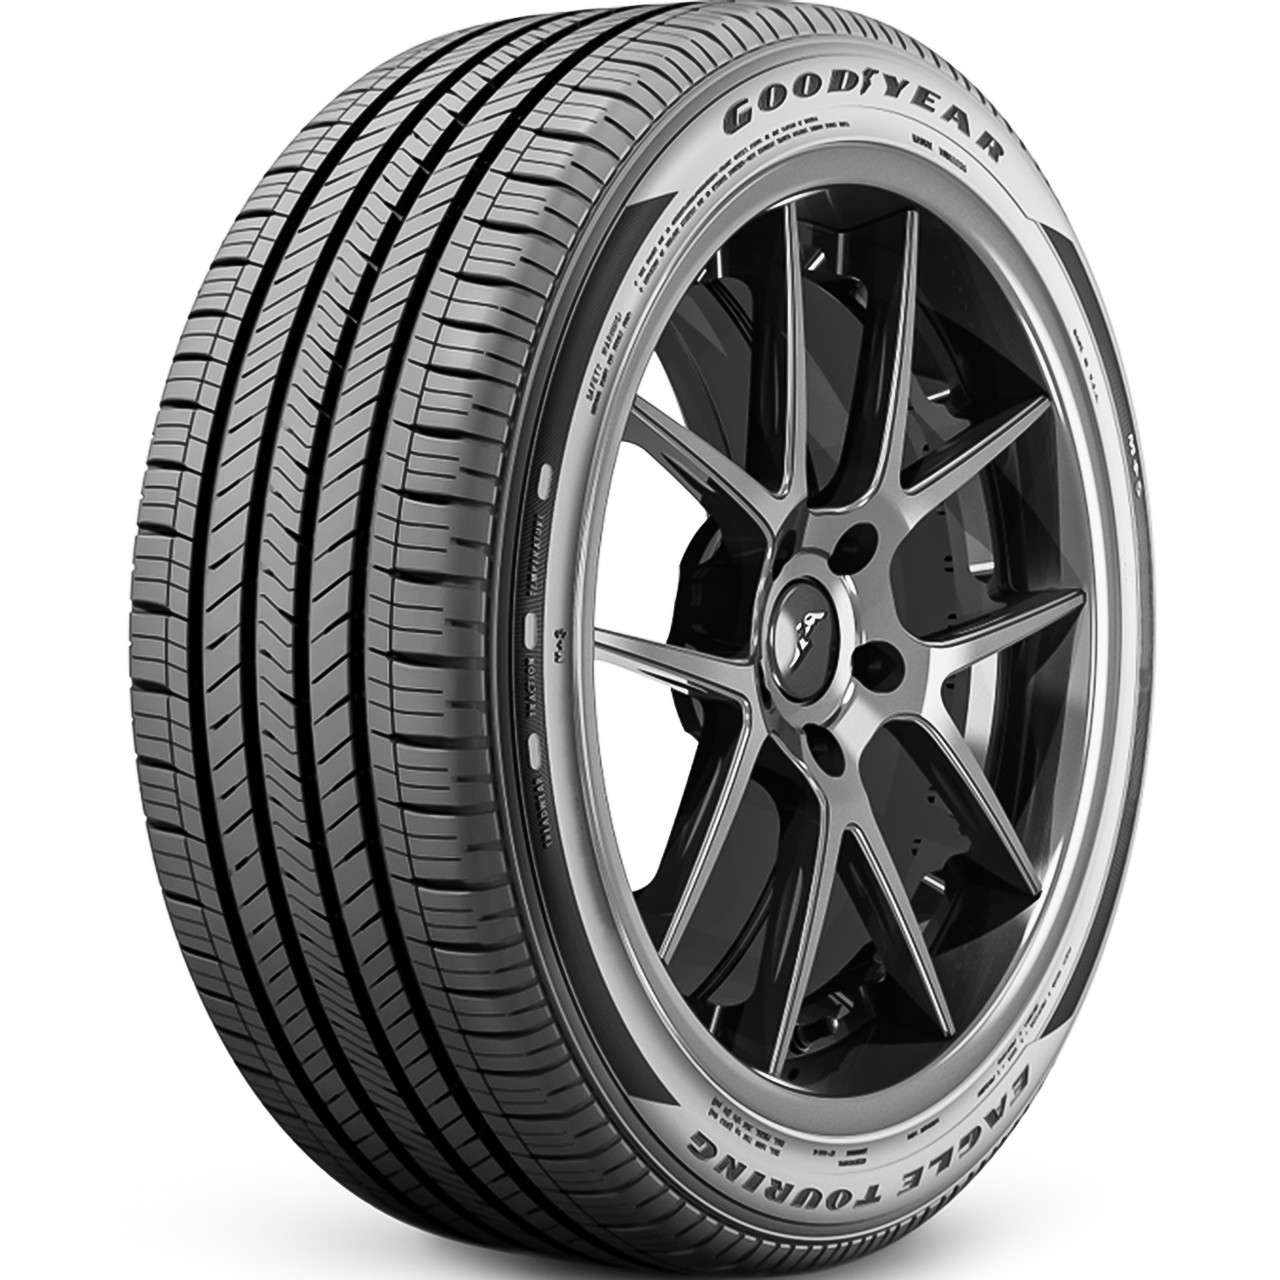 Photos - Tyre Goodyear Eagle Touring SCT 255/50R21, All Season, Touring tires. 